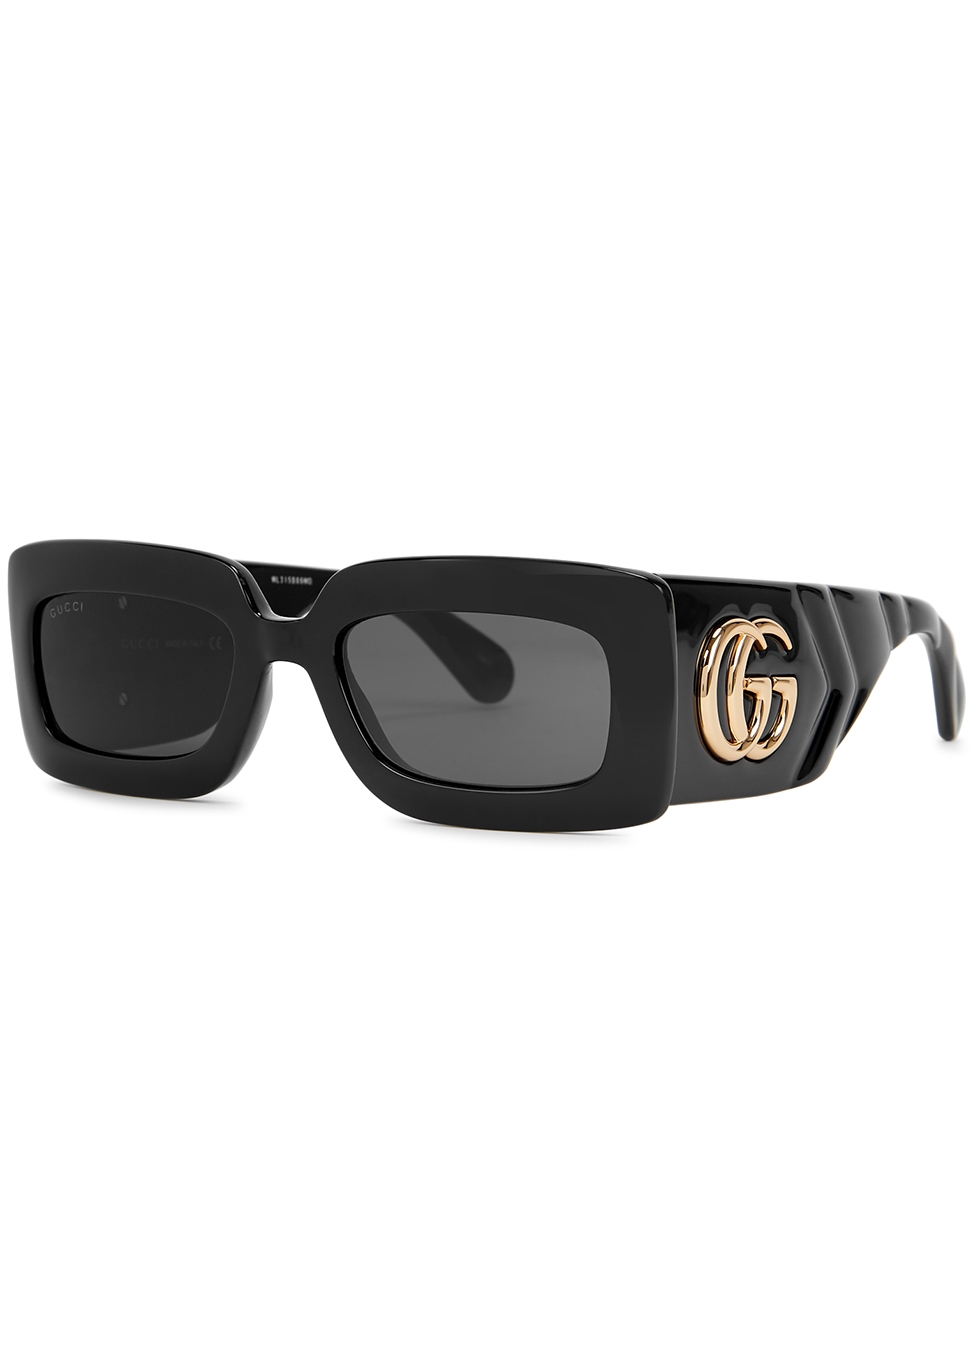 gucci sunglasses harvey nichols